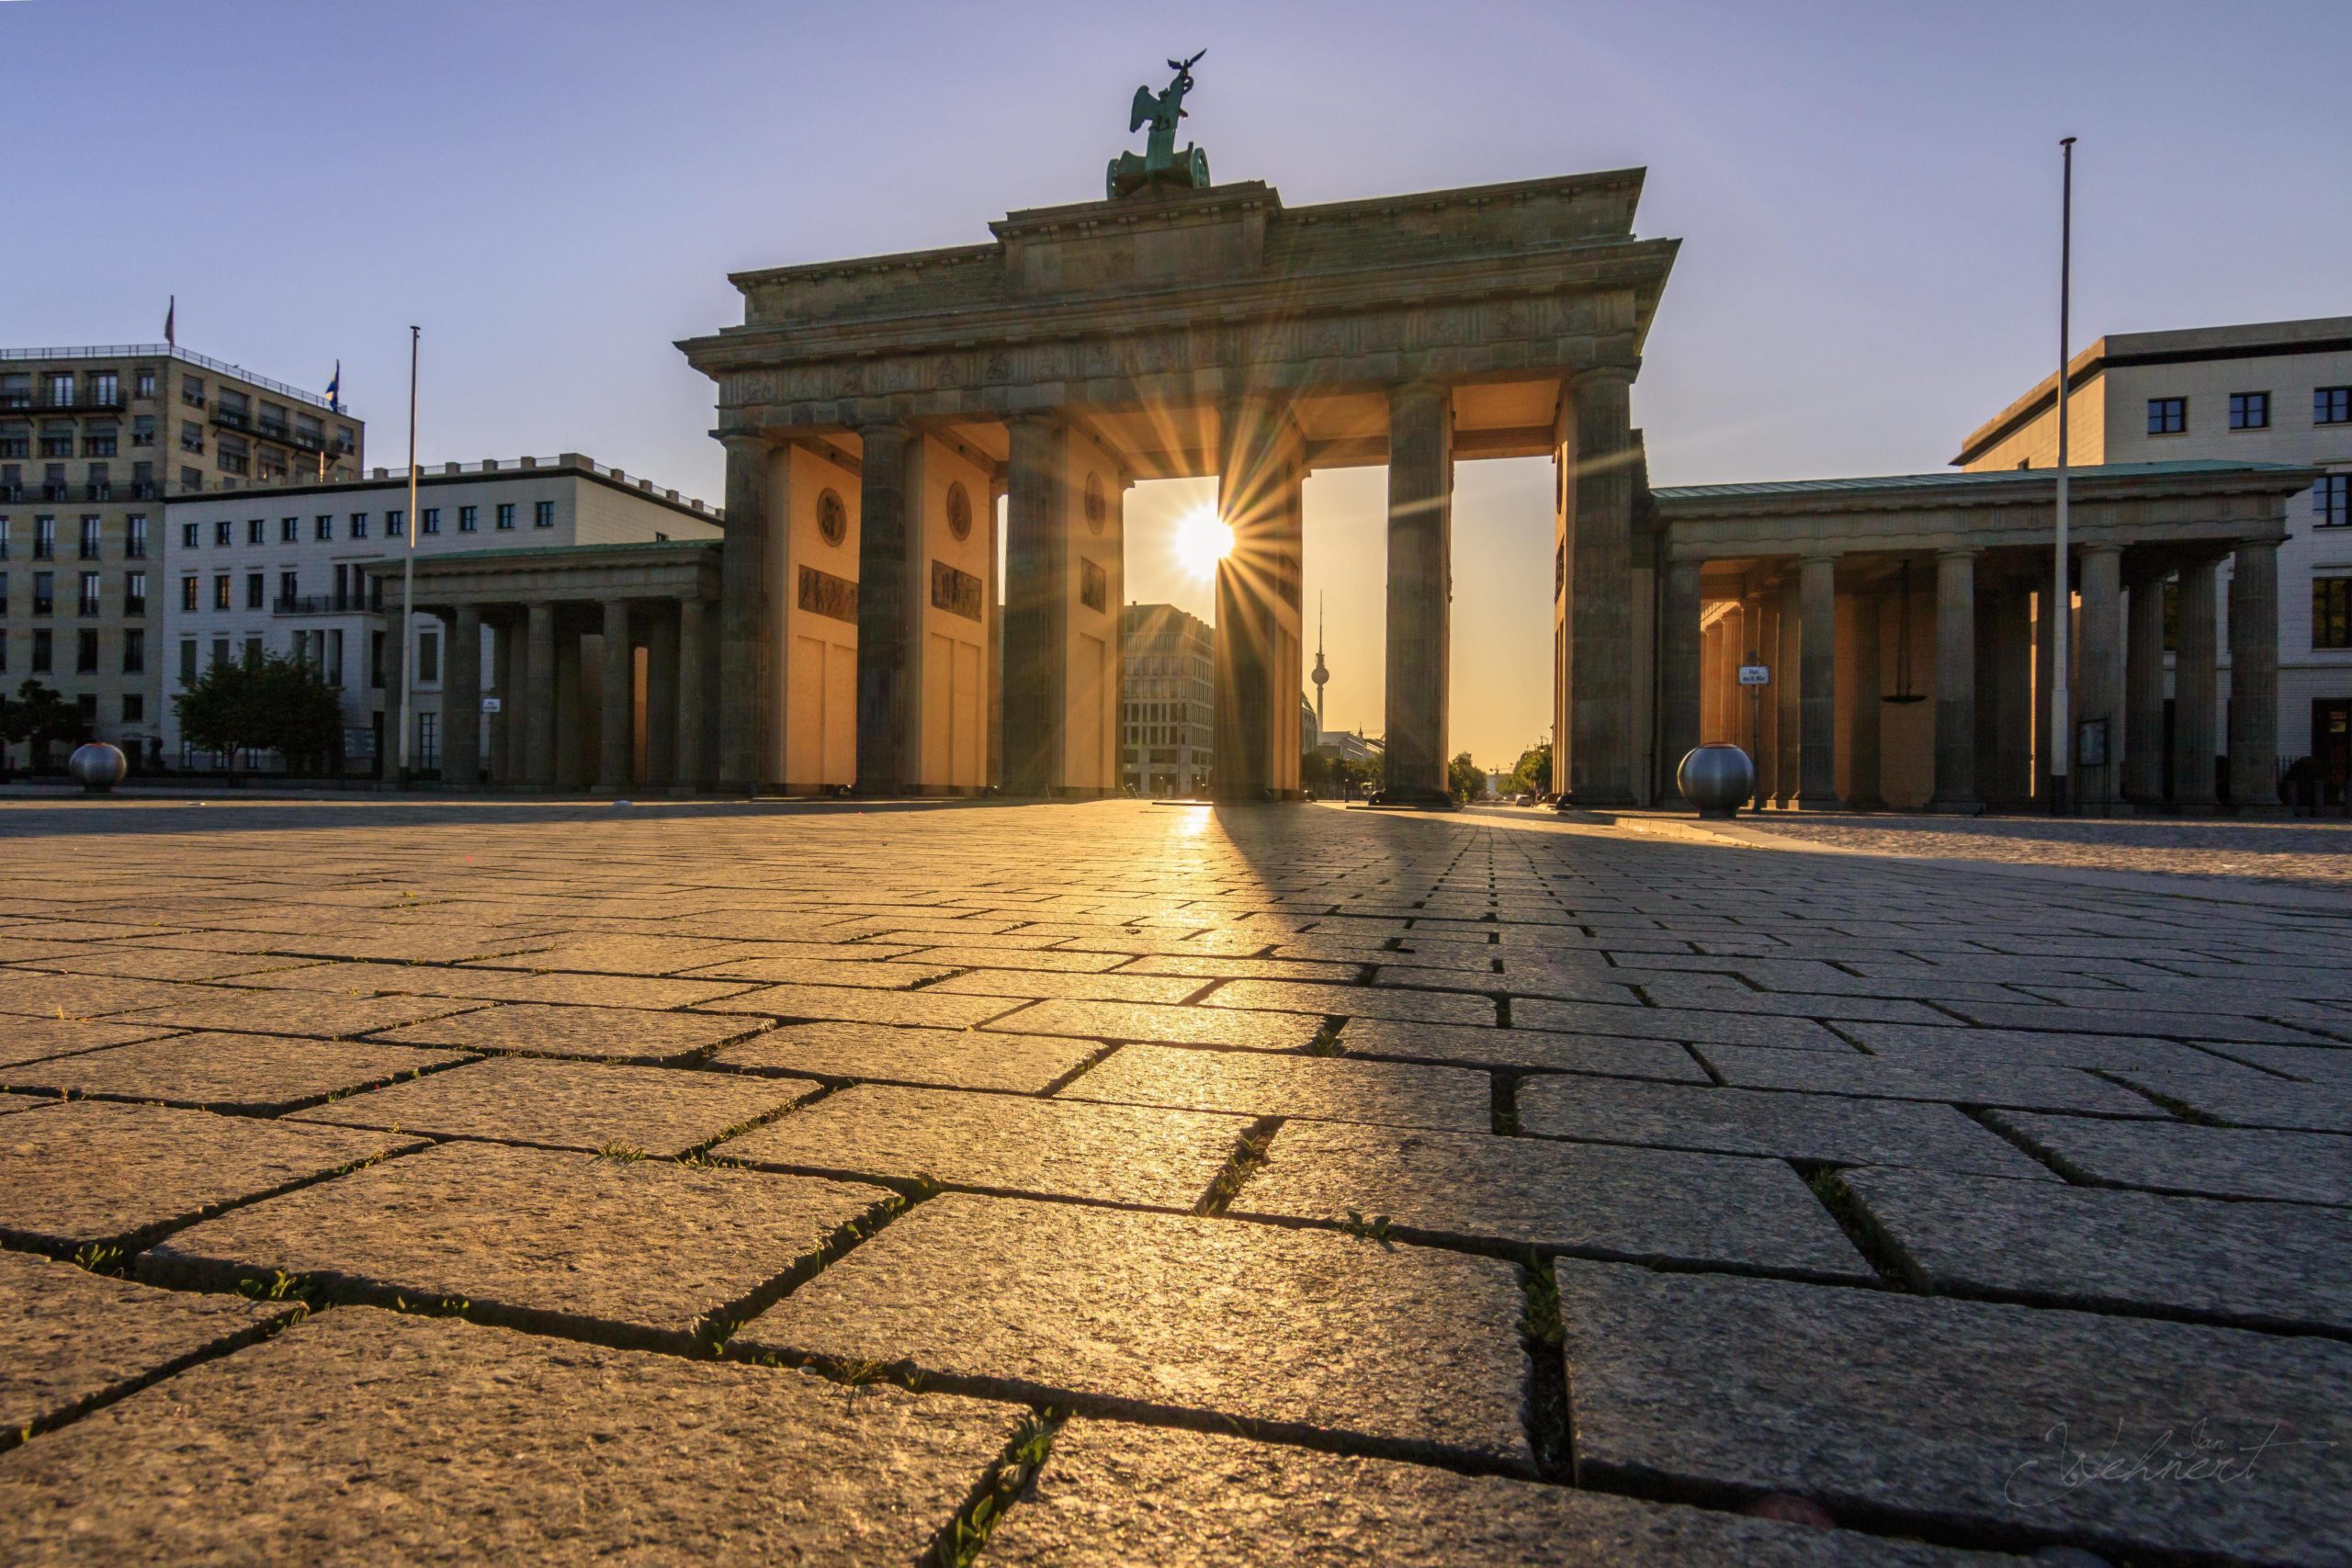 Sonnenaufgang in Berlin Am Brandenburger Tor zieht einen das einfallende Sonnenlicht früh morgens in seinen Bann.